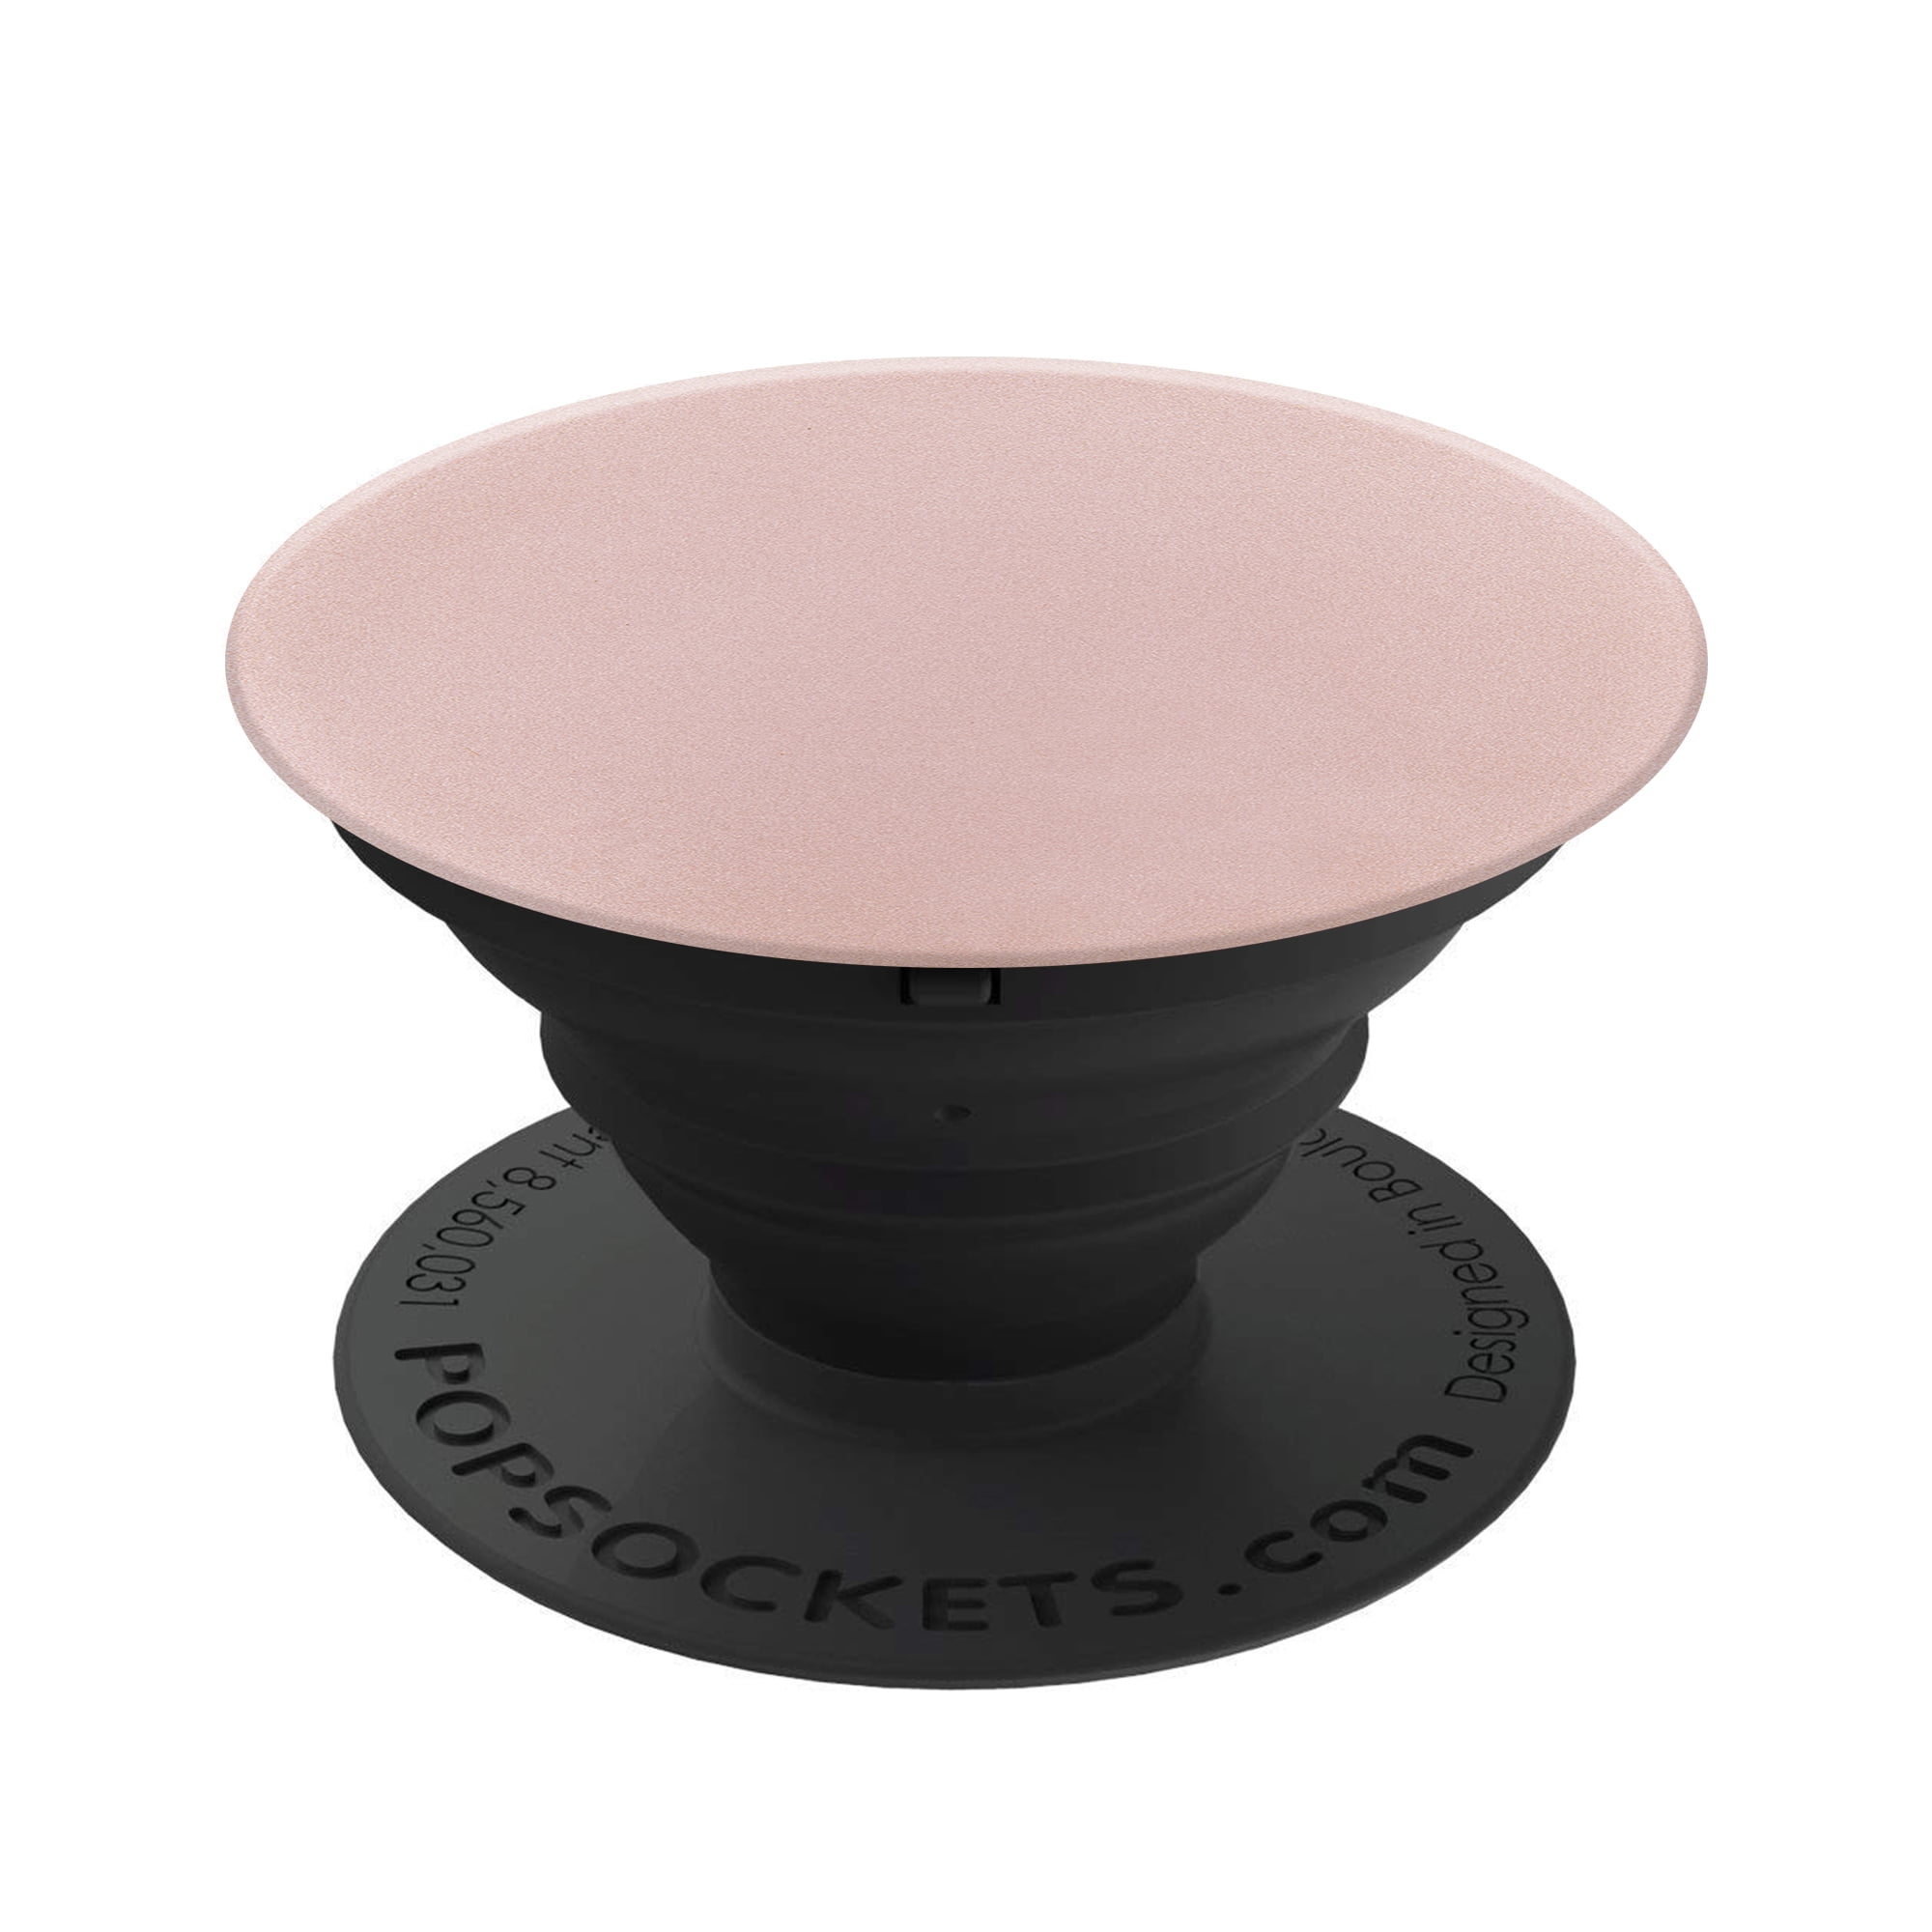 væsentligt Alvorlig hvordan Genuine PopSockets Grip & Stand for Phones and Tablets - Pink Rose Gold  Aluminum - Walmart.com